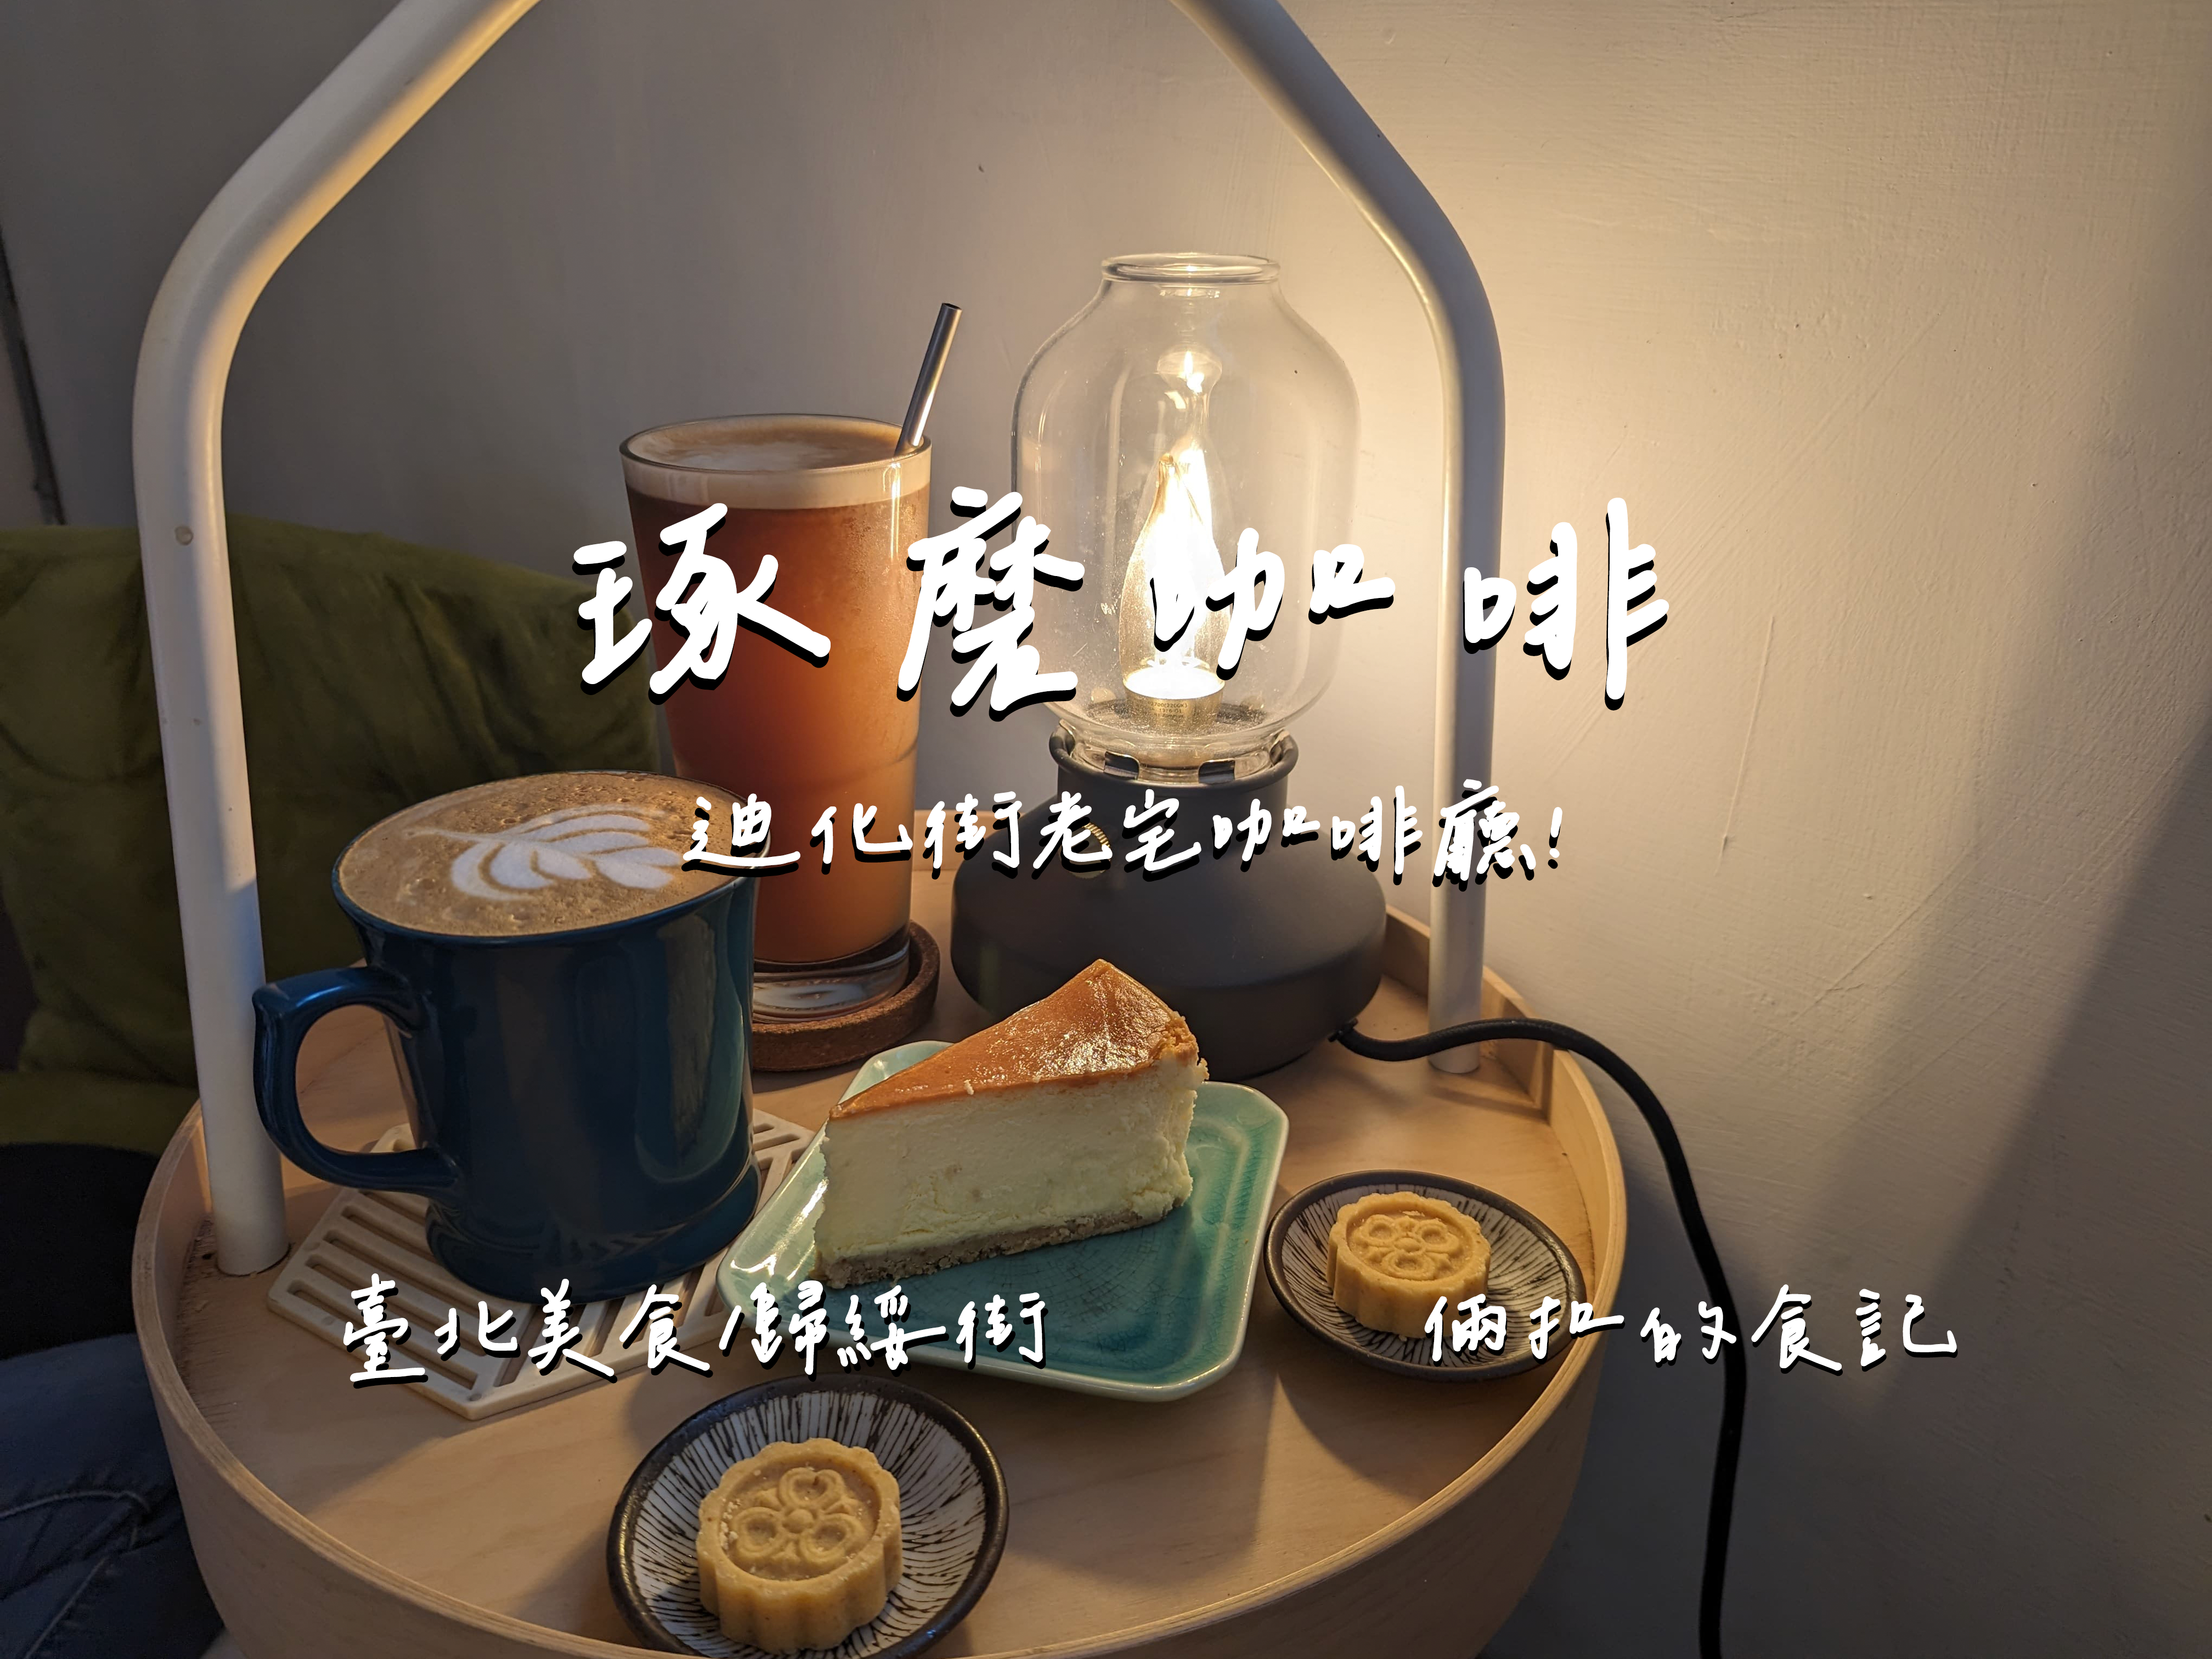 【臺北美食】琢磨咖啡coffee 很情懷的老宅咖啡廳 適合在店內待上許久 迪化街附近美食 迪化街咖啡店 最新完整菜單